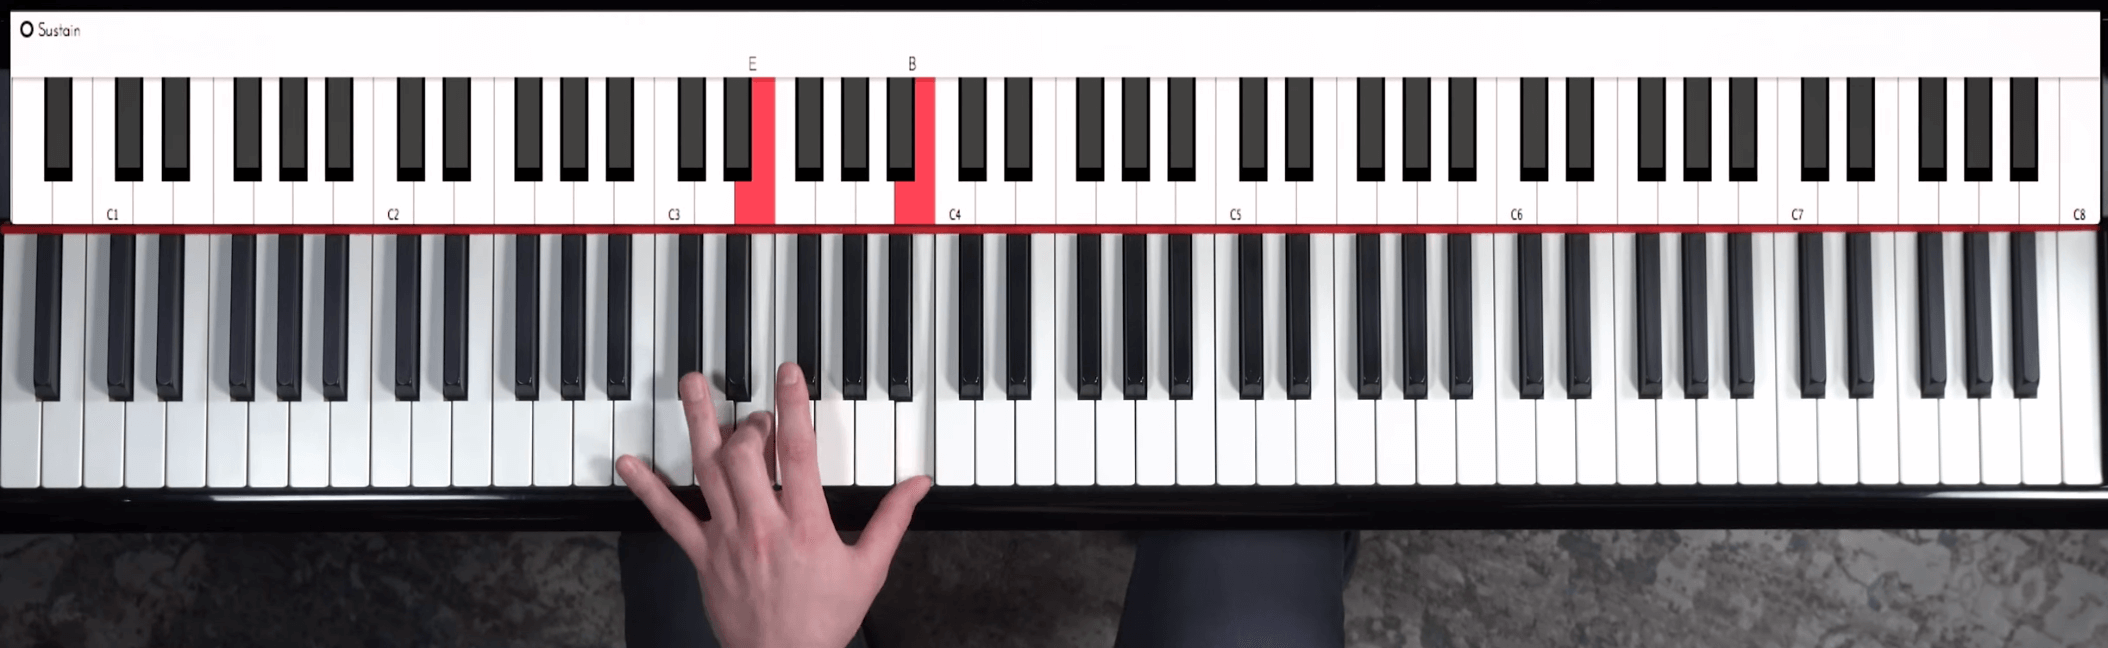 Stride piano guide tones